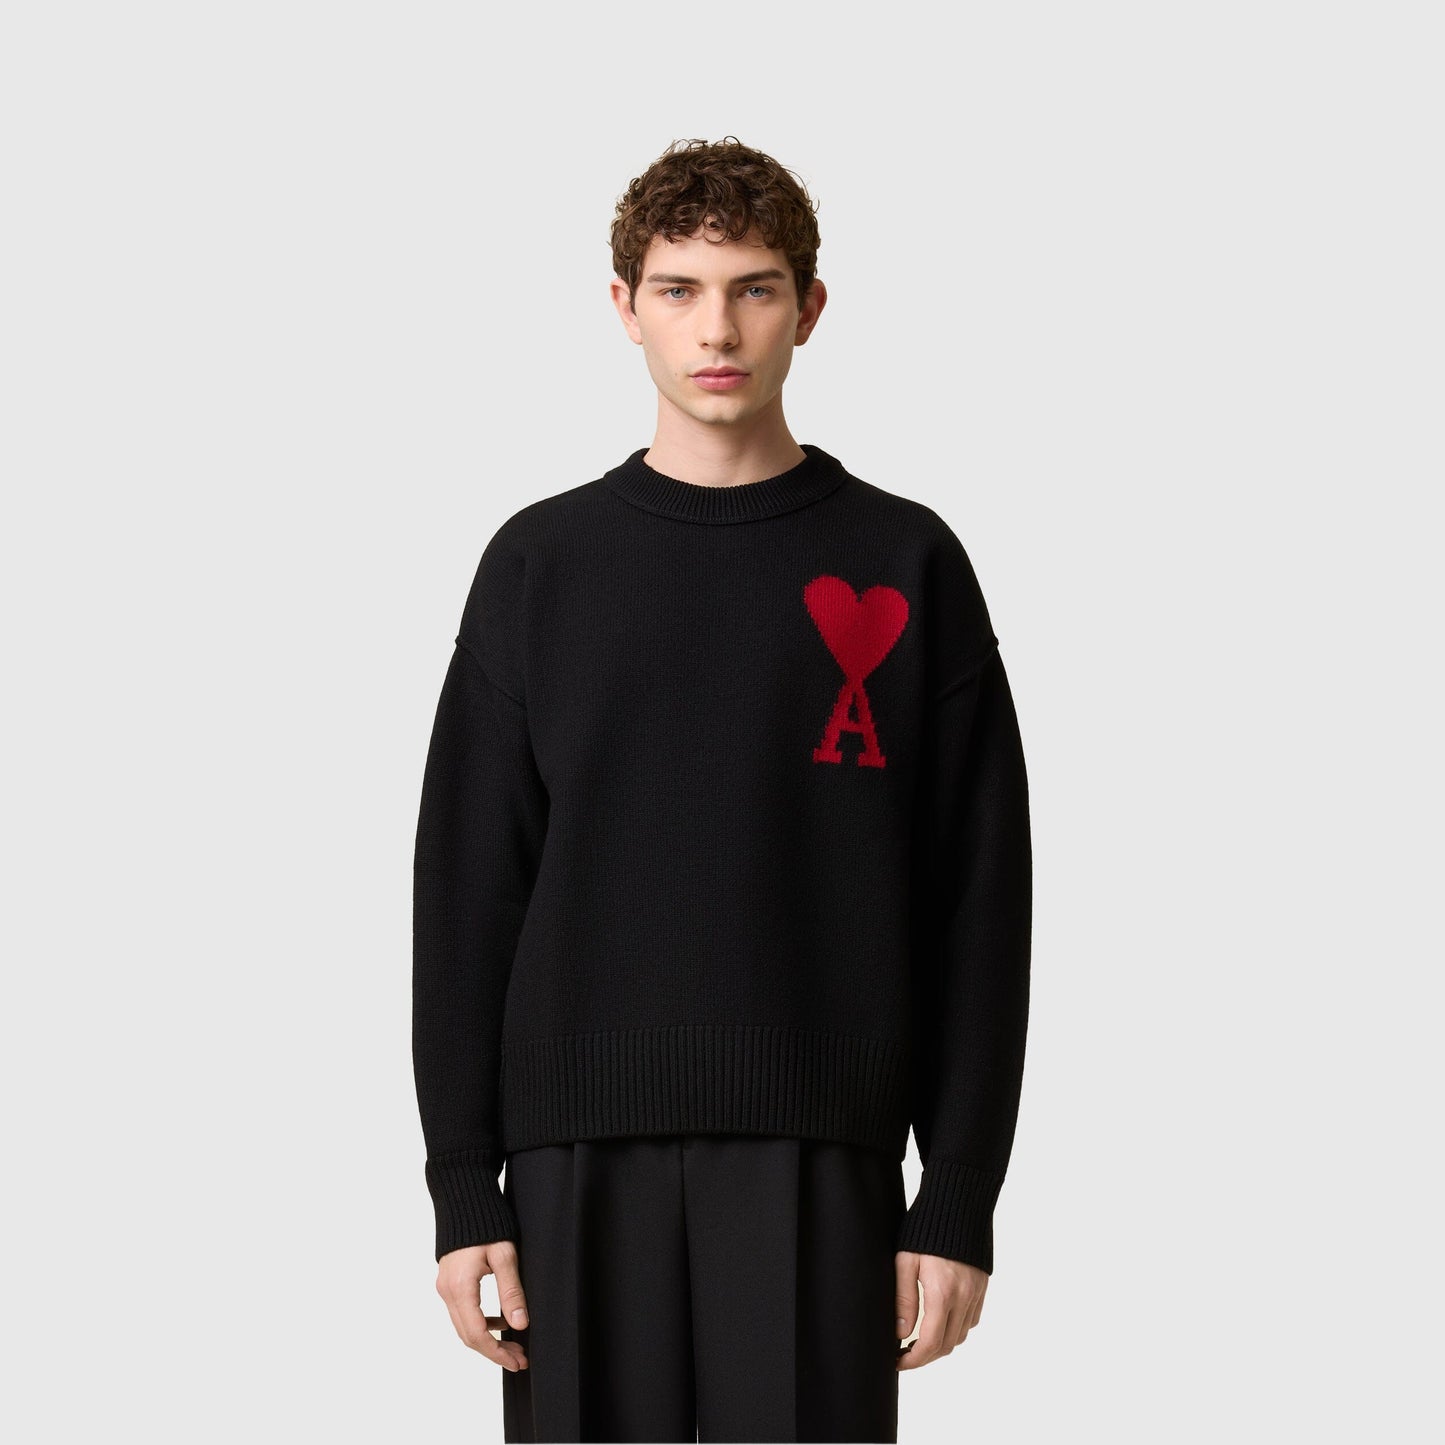 AMI Alexandre Mattiussi Red ADC Sweater - Black / Red Knitwear AMI Alexandre Mattiussi 